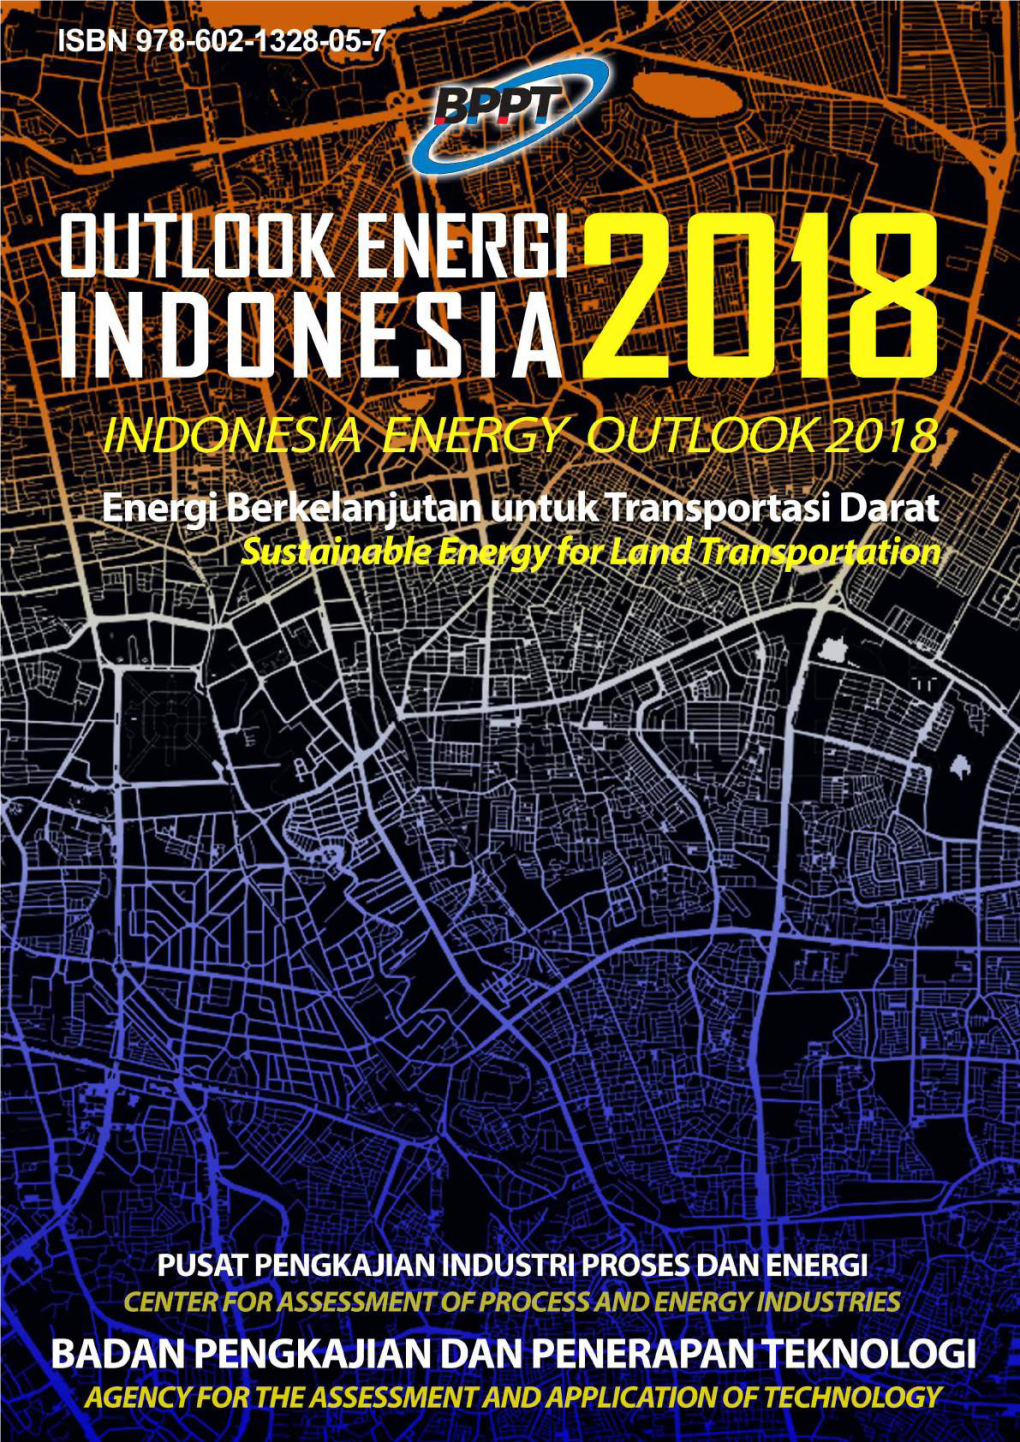 Outlook Energi Indonesia 2018 Indonesia Energy Outlook 2018